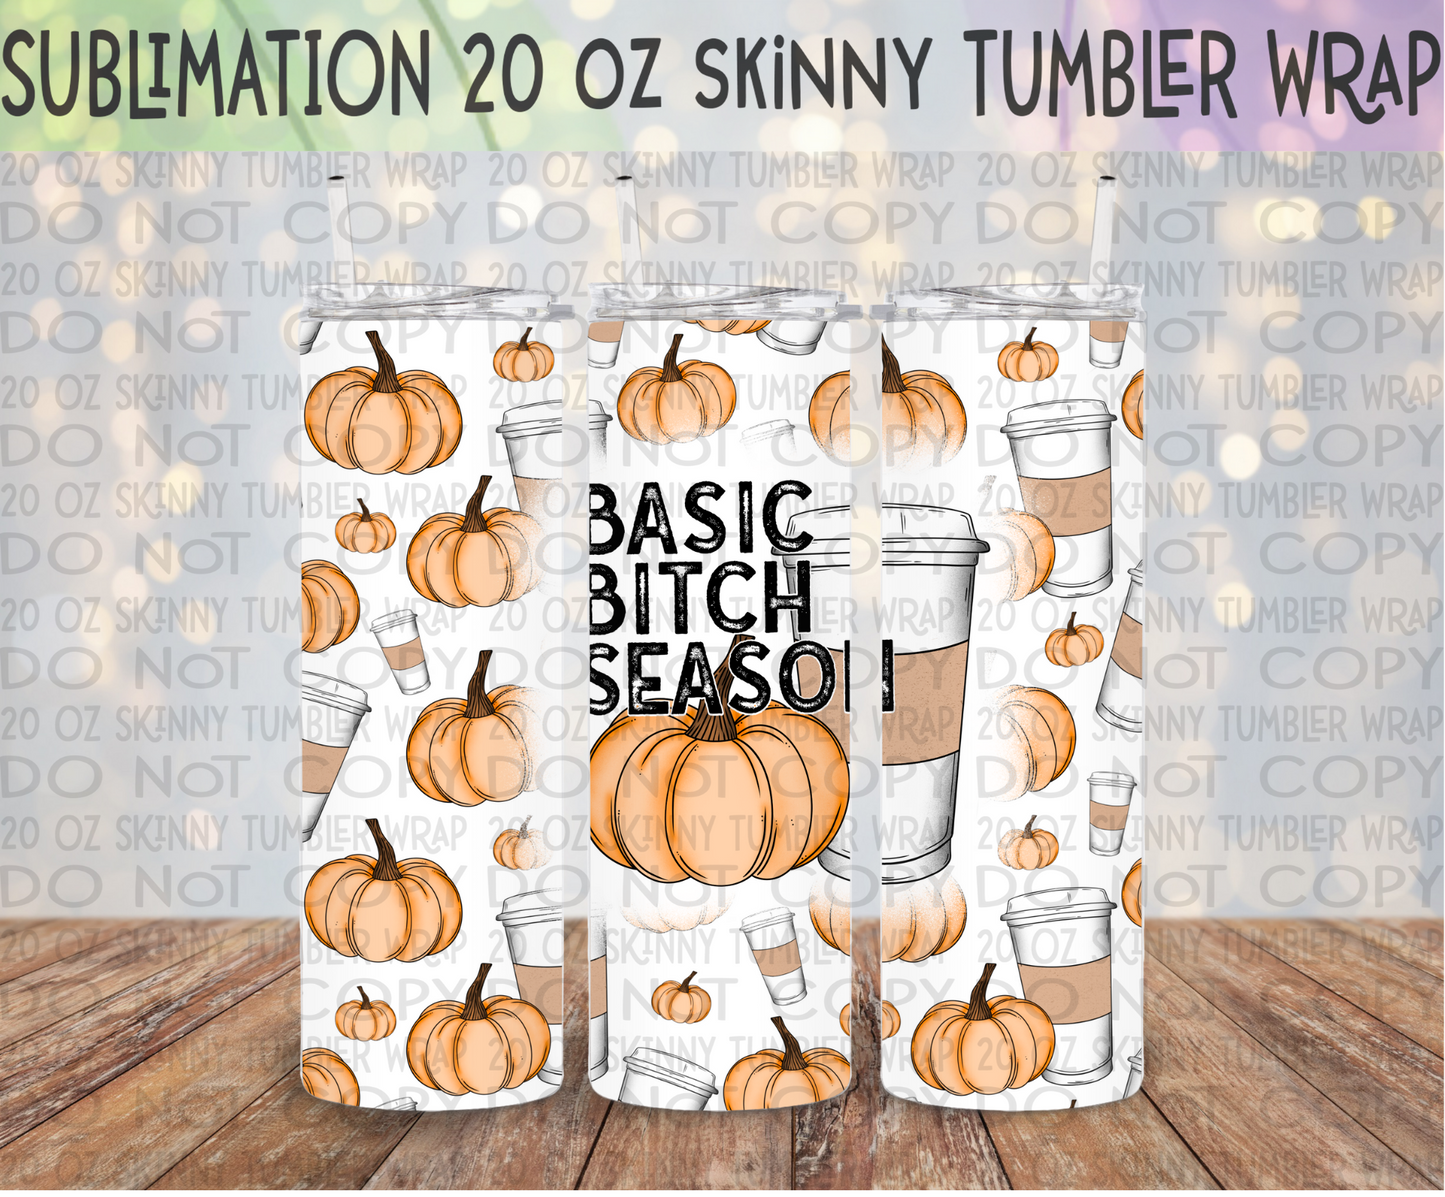 Basic Bitch Season 20 Oz Skinny Tumbler Wrap - Sublimation Transfer - RTS